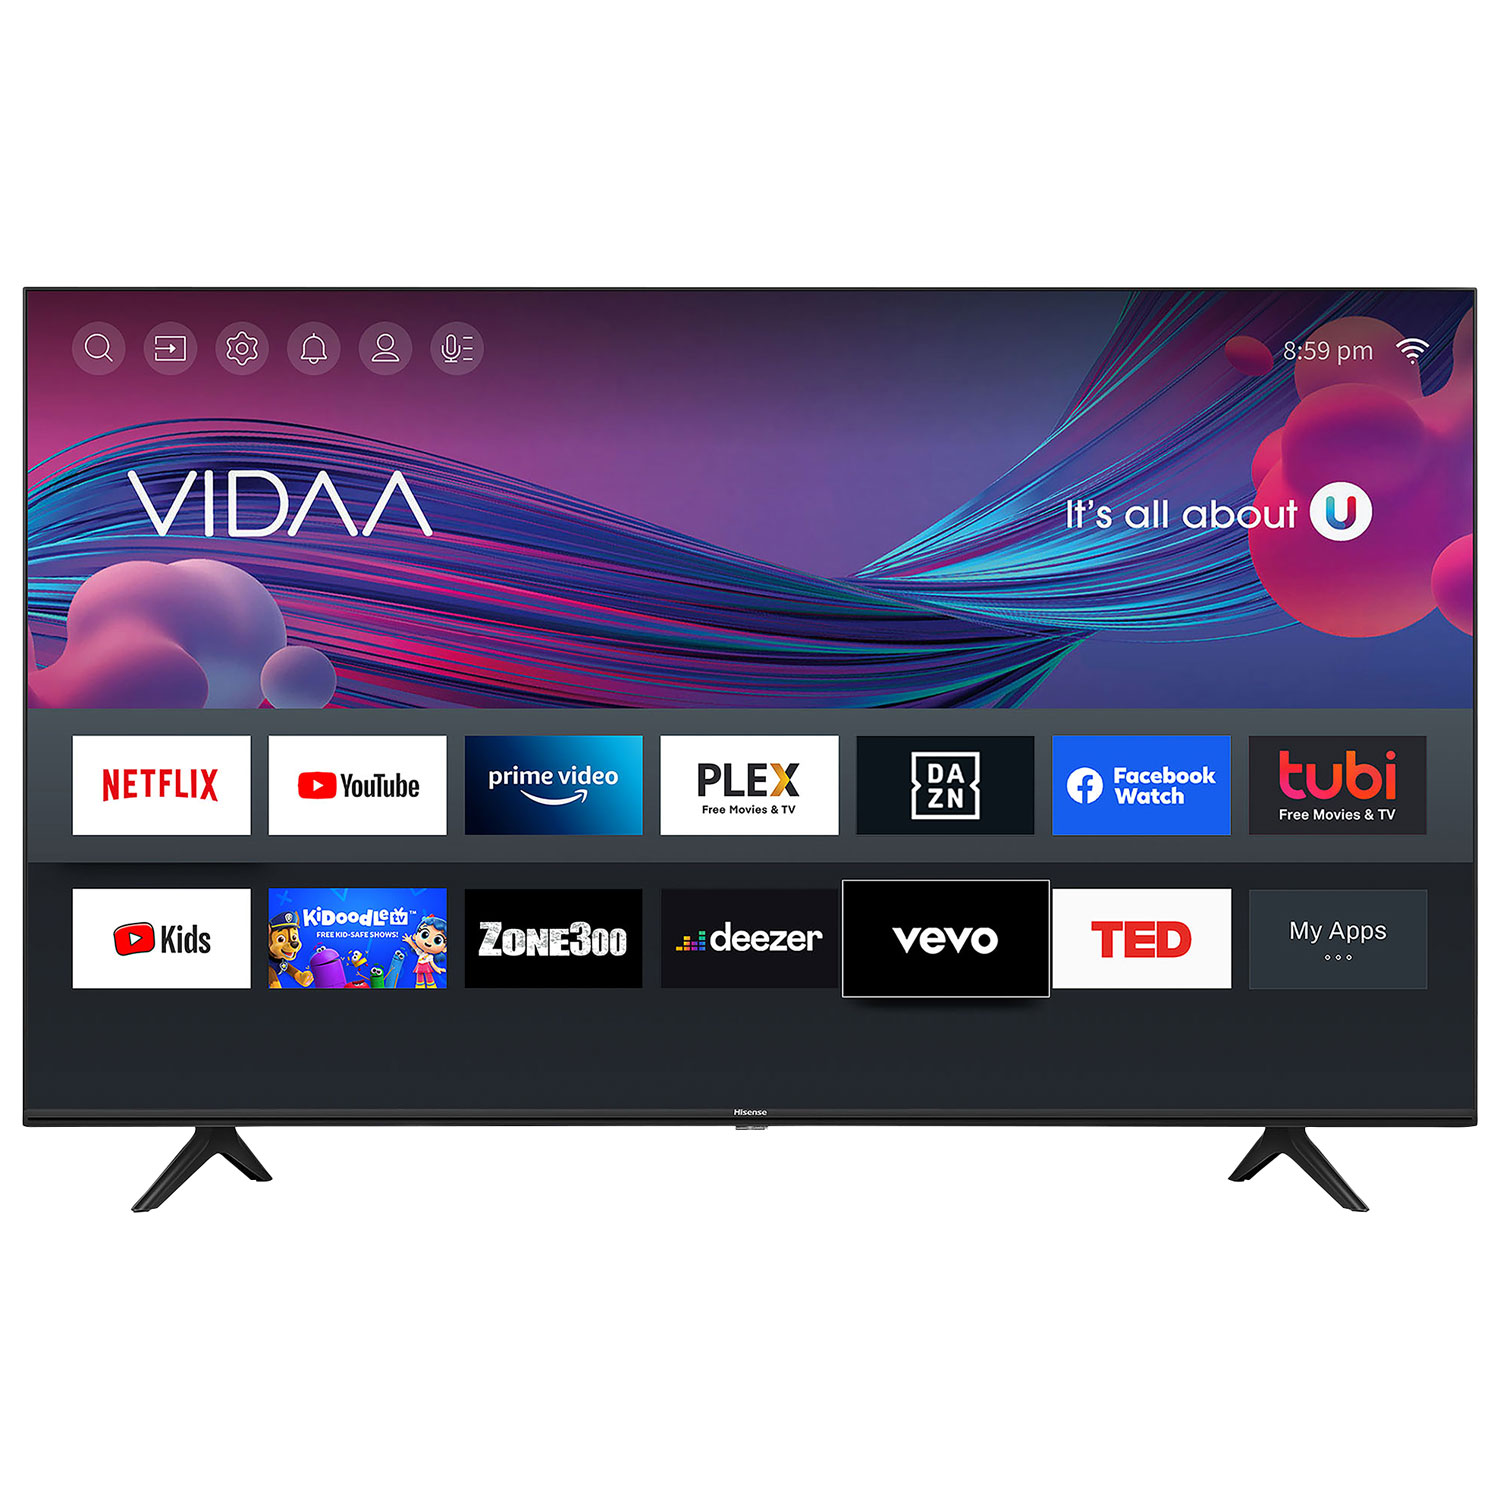 Hisense 32" 720p HD LCD Vidaa Smart TV (32A4GV) - 2021